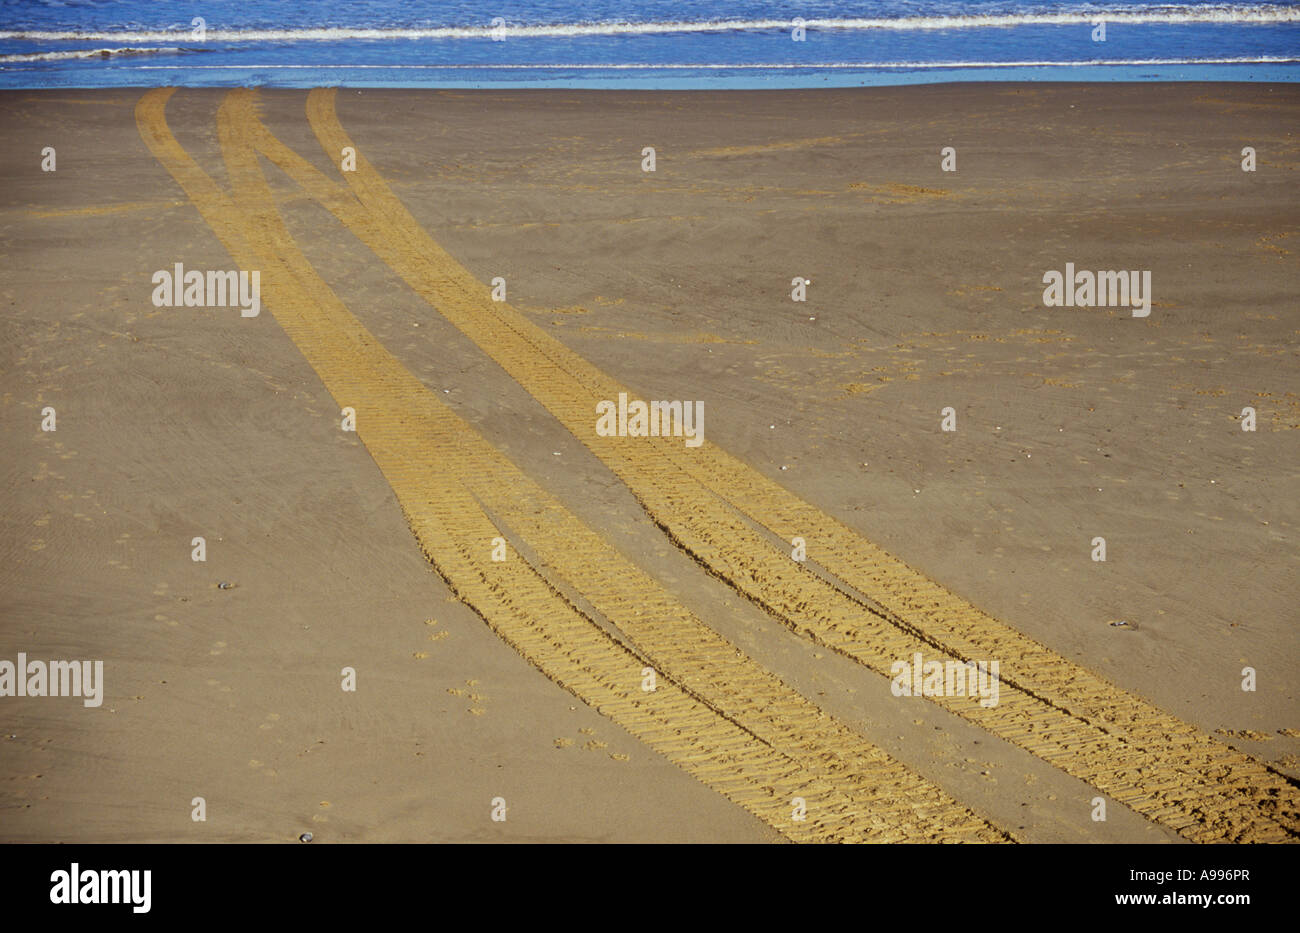 Un jeu de pneu ou de chenilles traversant une plage de sable clair et disparaître dans ou sortant d'un doux bleu de la mer Banque D'Images